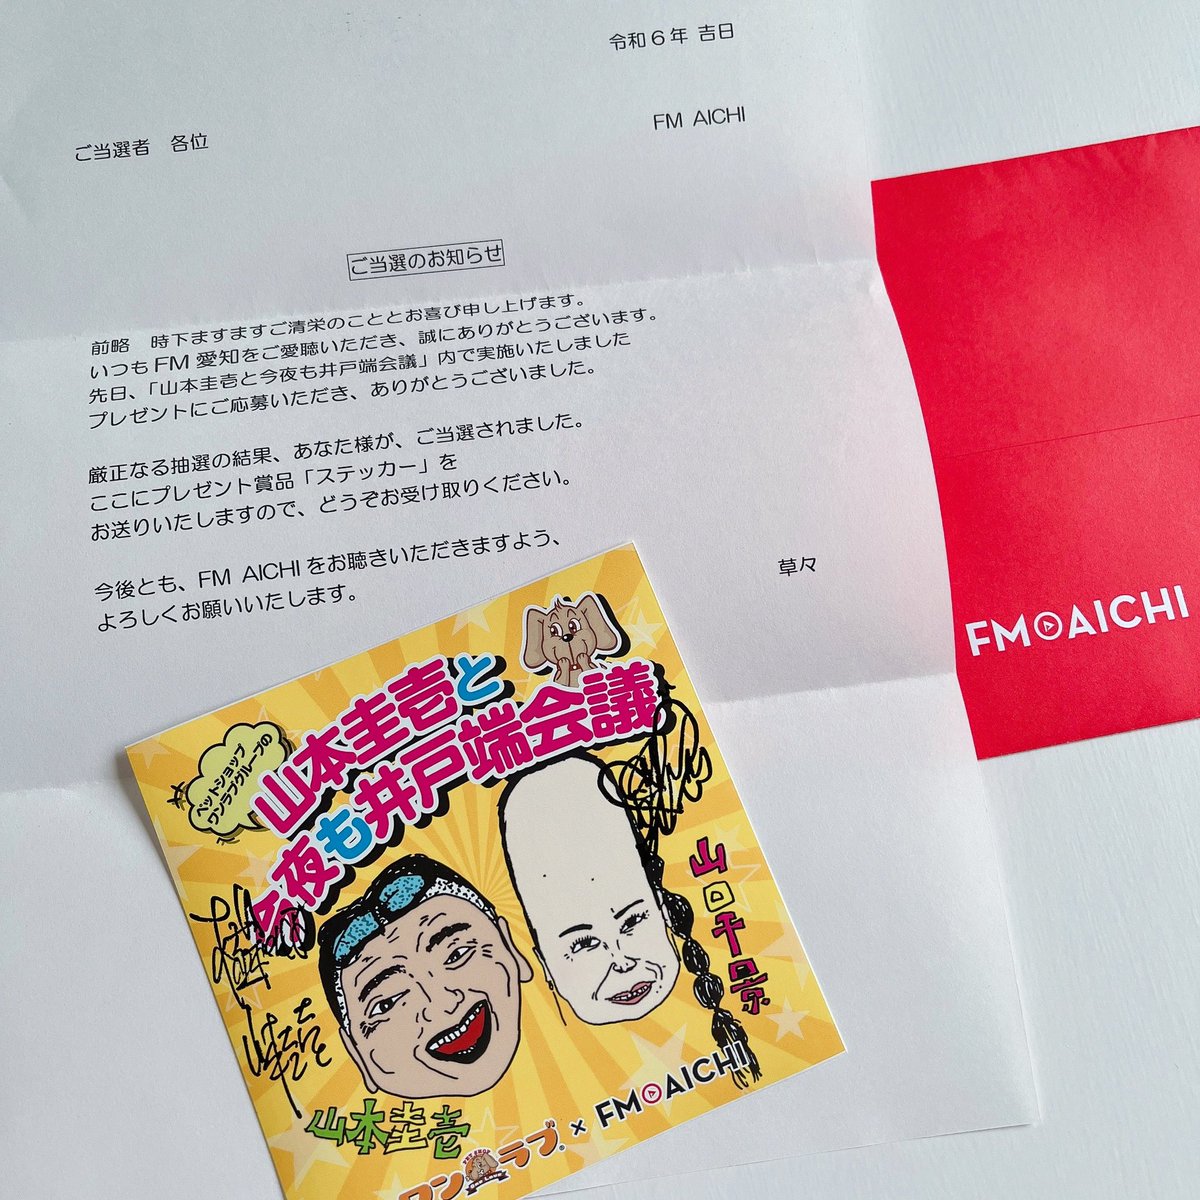 嬉しい～～～(⁎˃ ꇴ ˂⁎)❤
ステッカー届きましたぁ！！！

山本さん、千景さん、スタッフの皆さん！
ありがとうございます🙌

#井戸ナイト #ワンラブ #FMAICHI